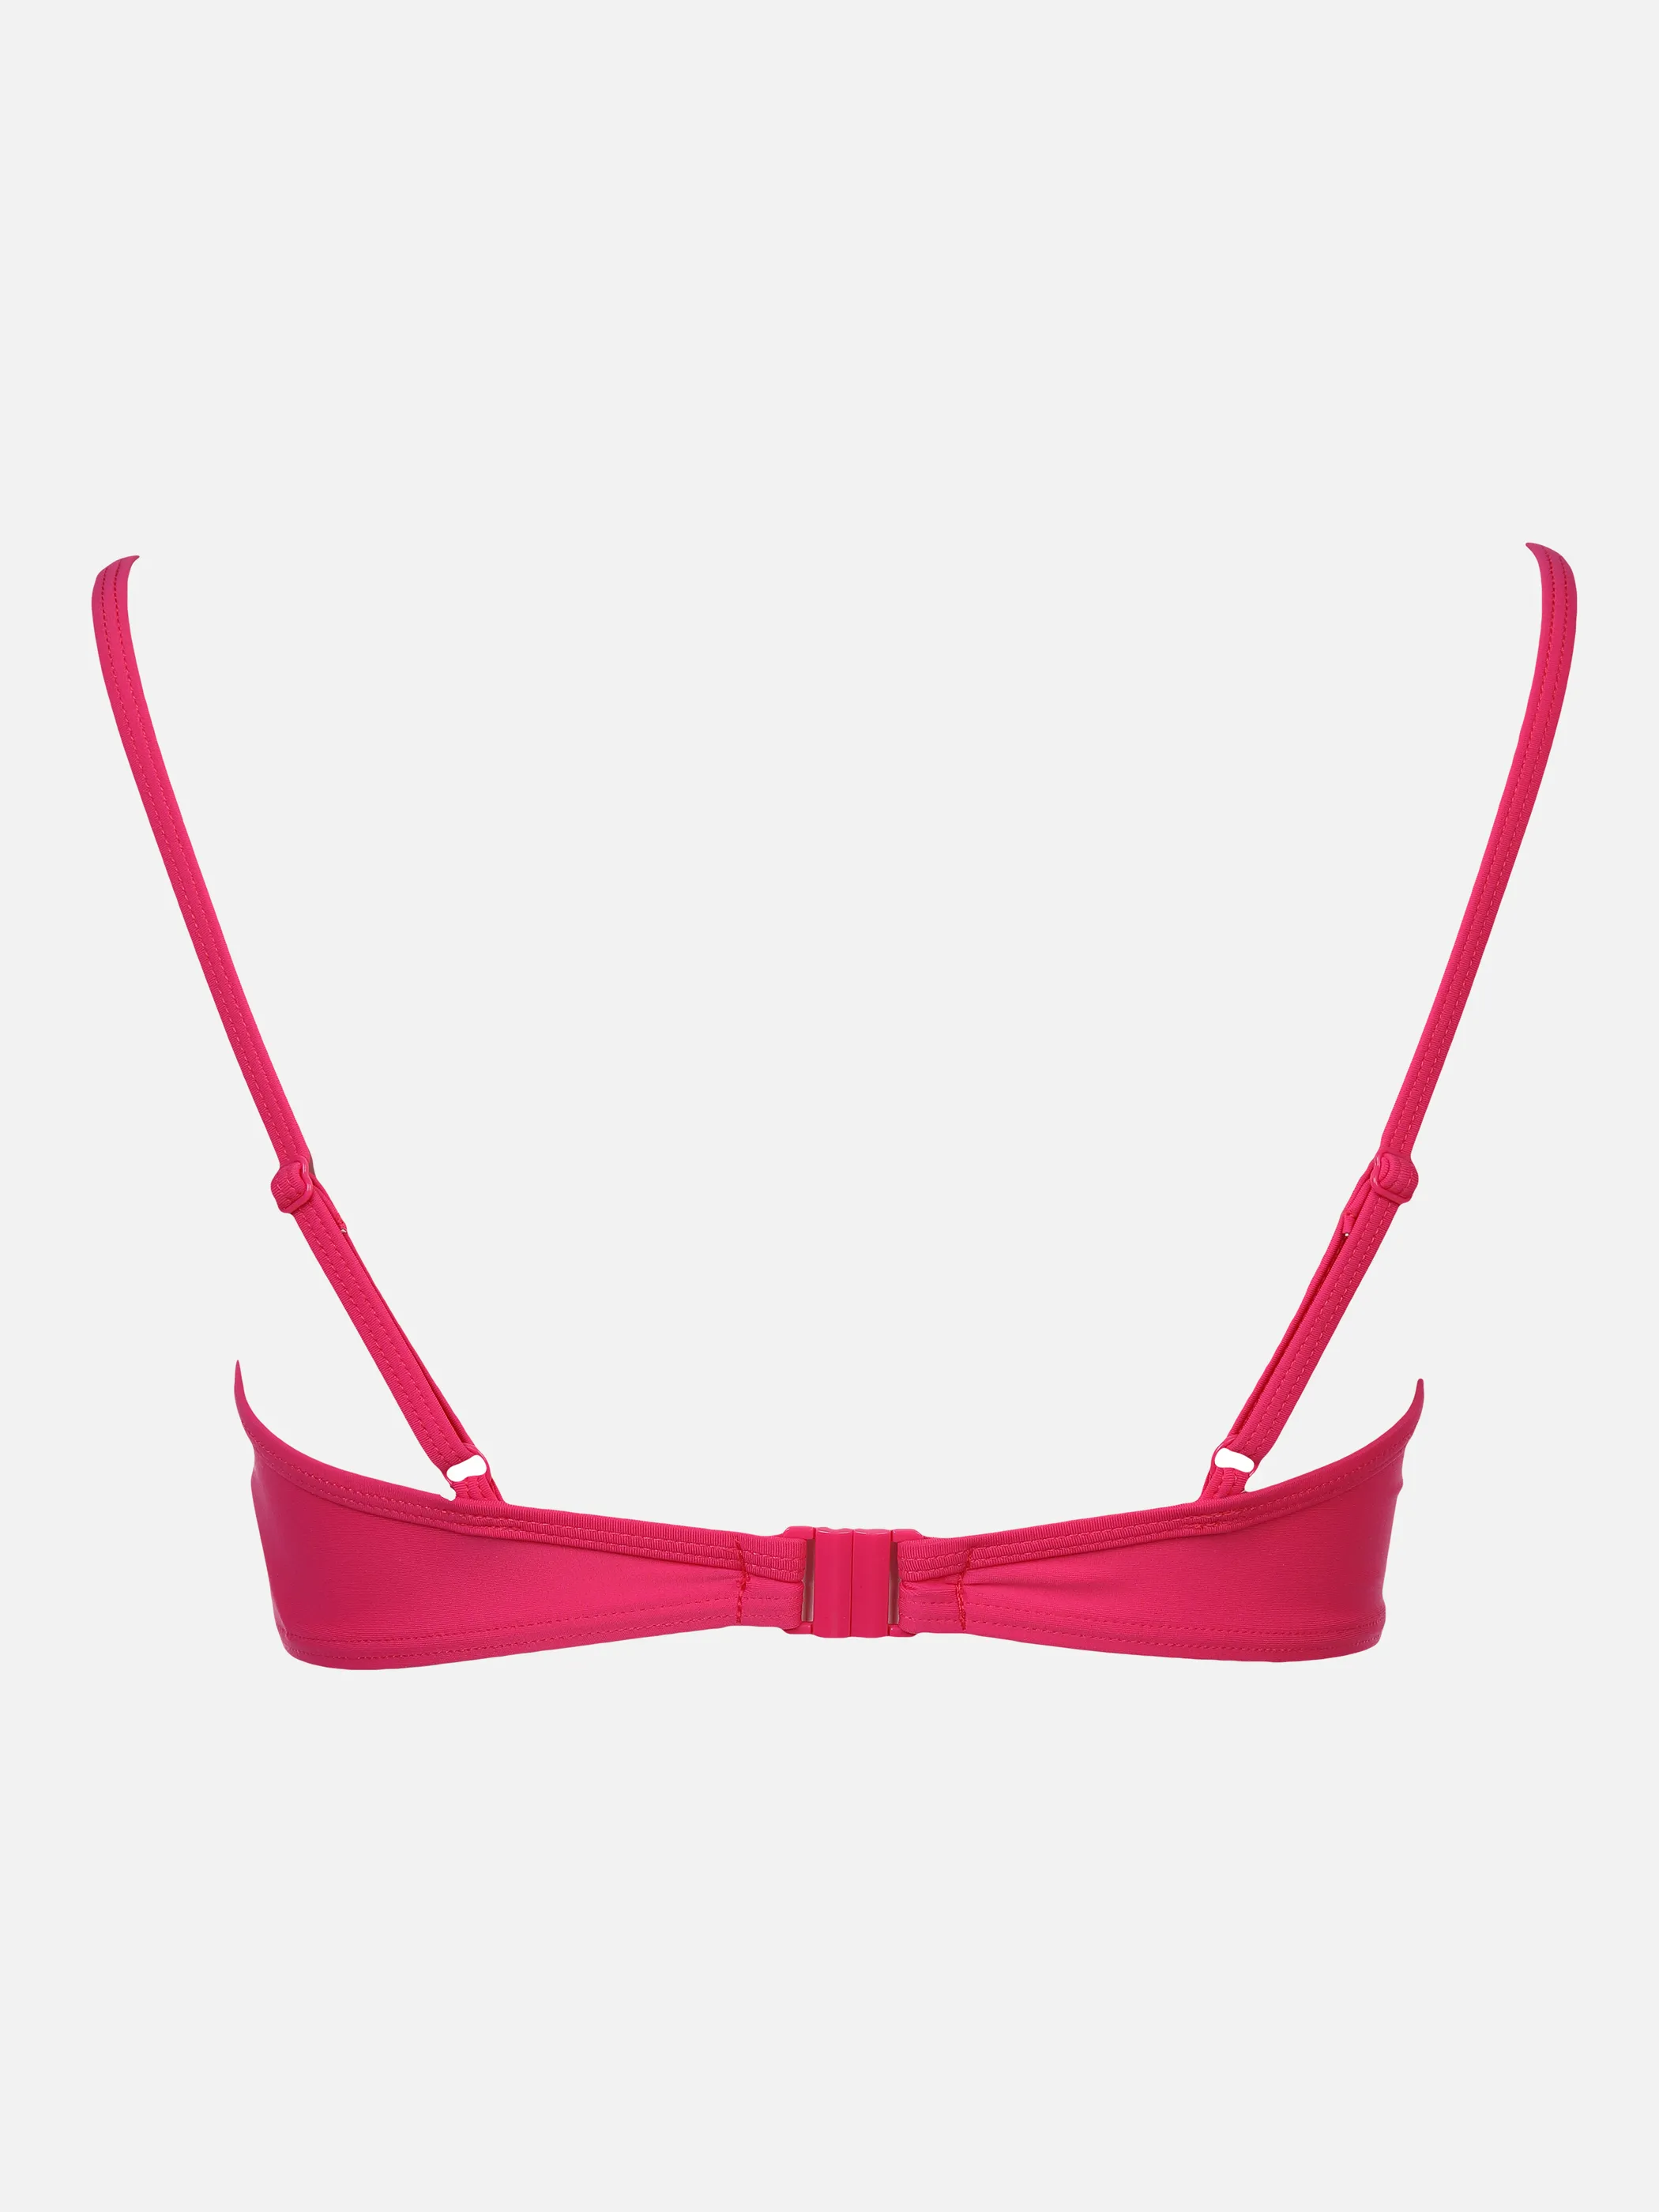 Grinario Sports Da-Push-Up-Bikini, B-Cup Pink 863020 PINK 2